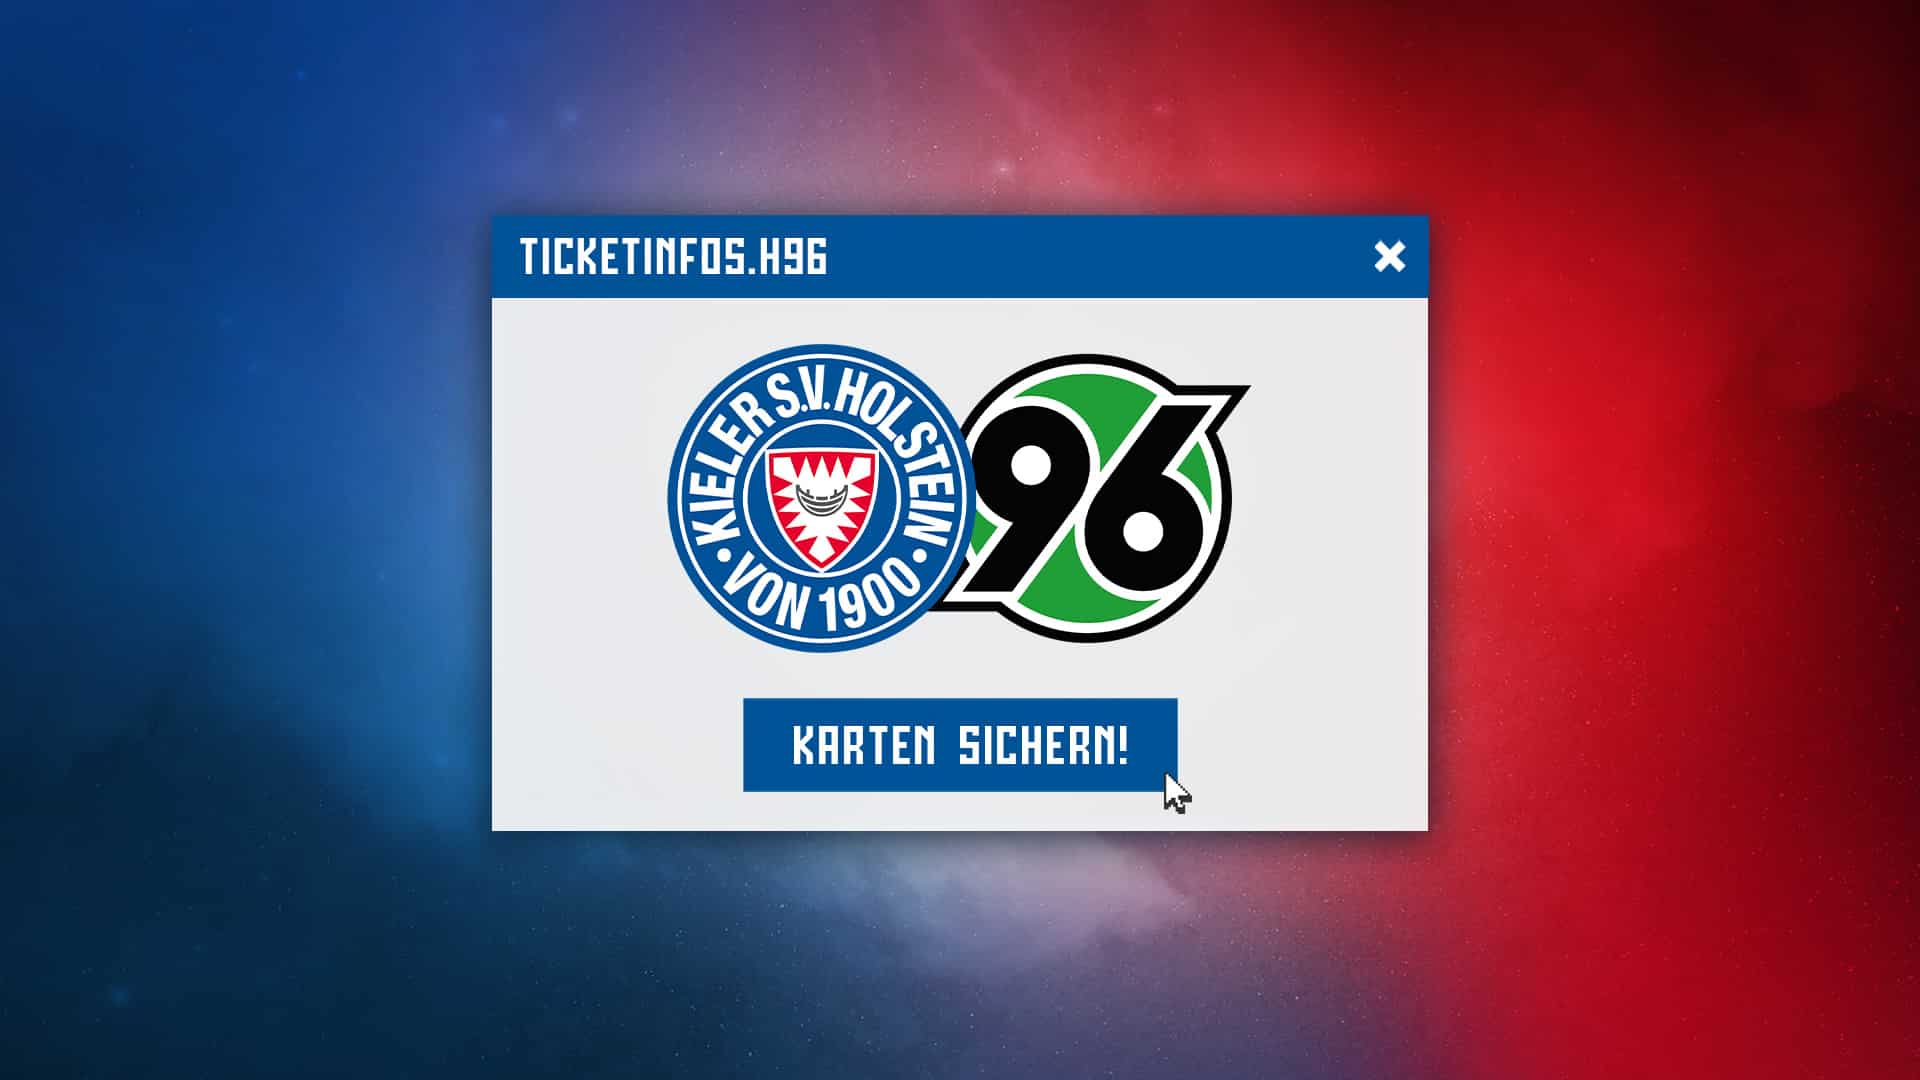 Ticketinfos für das Heimspiel gegen Hannover 96